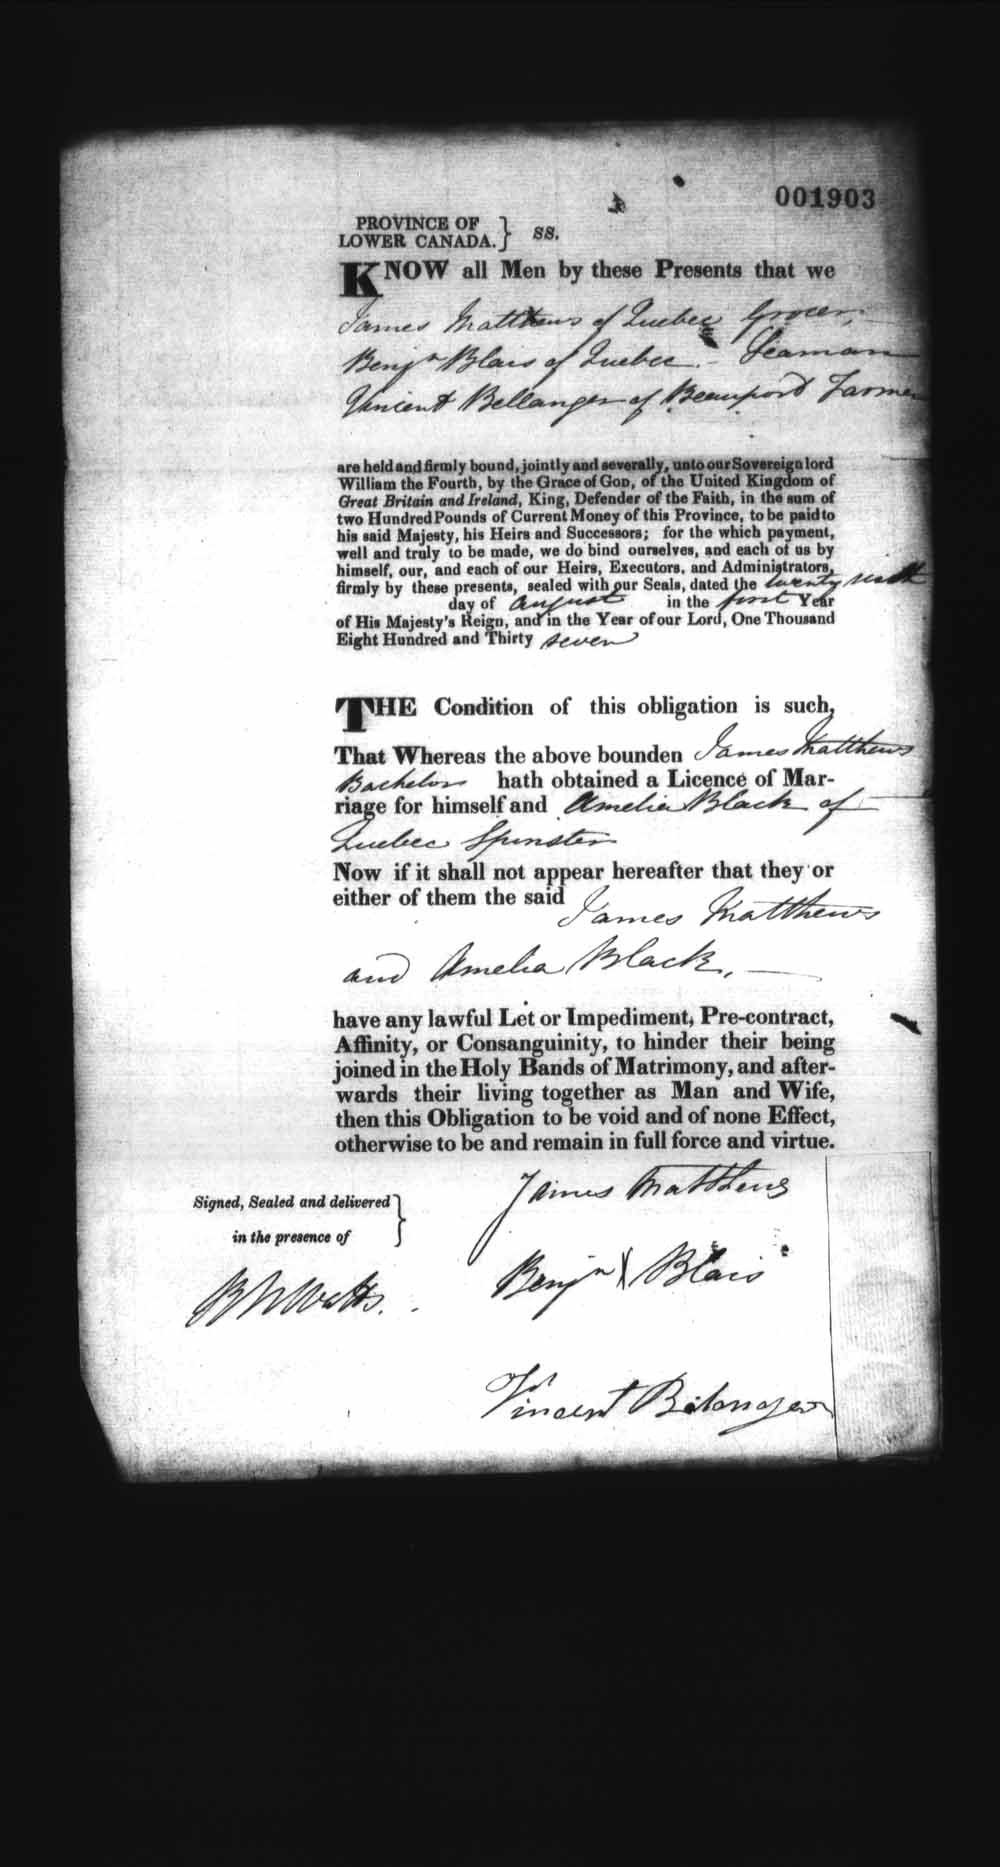 Page numérisé de Cautionnements de mariages pour le Haut-Canada et le Bas-Canada (1779-1865) pour l'image numéro: e008238237